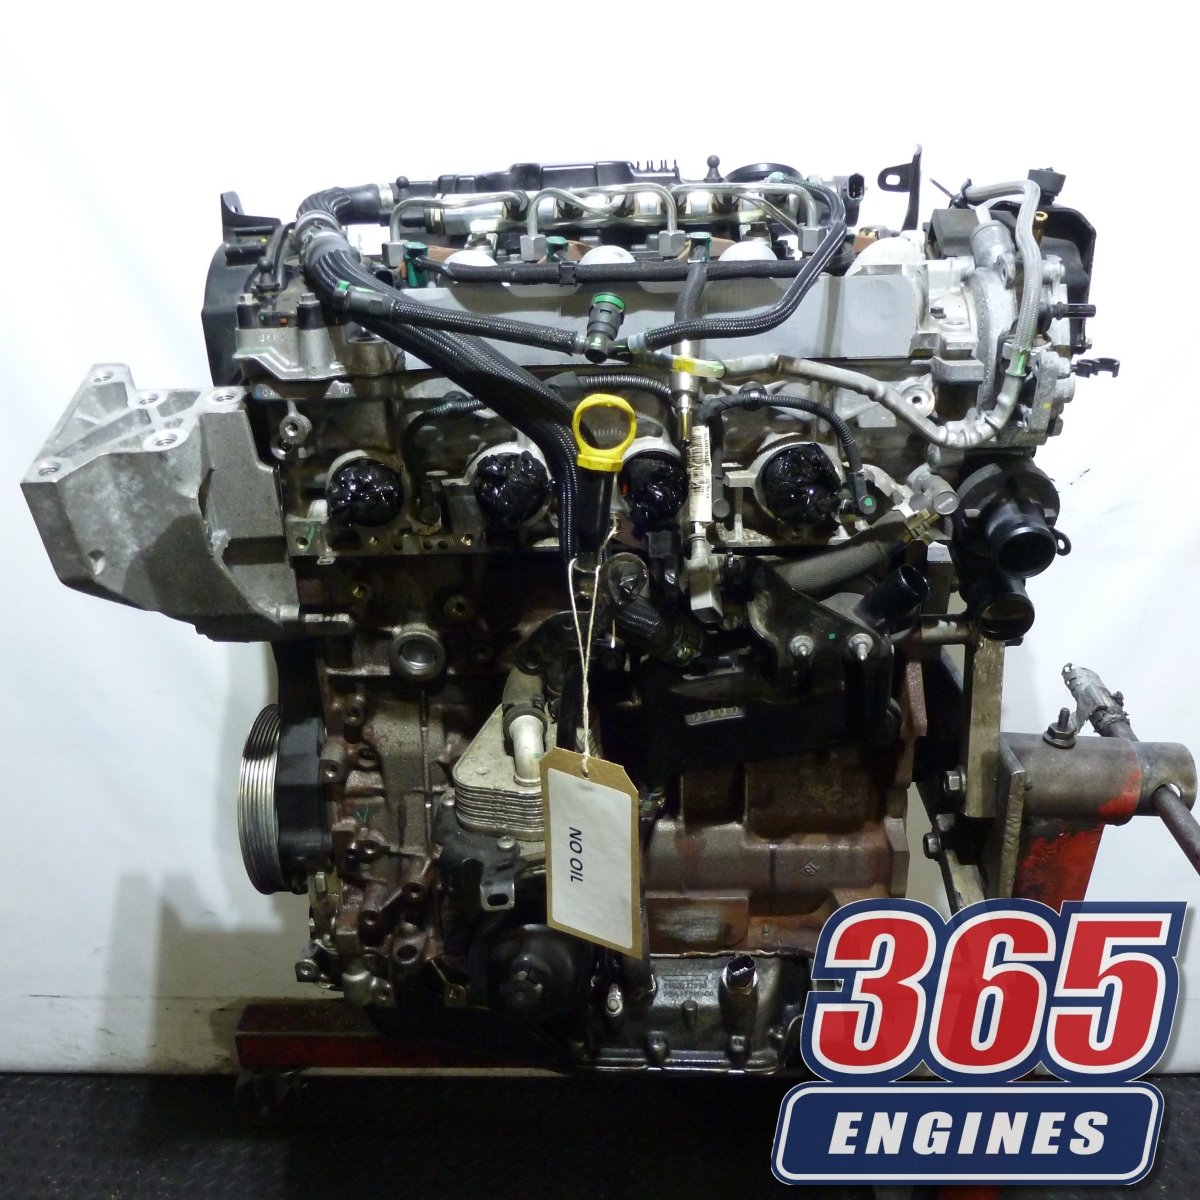 Range Rover Evoque Engine 2.2 TD4 Diesel 224DT Code 2011 2016